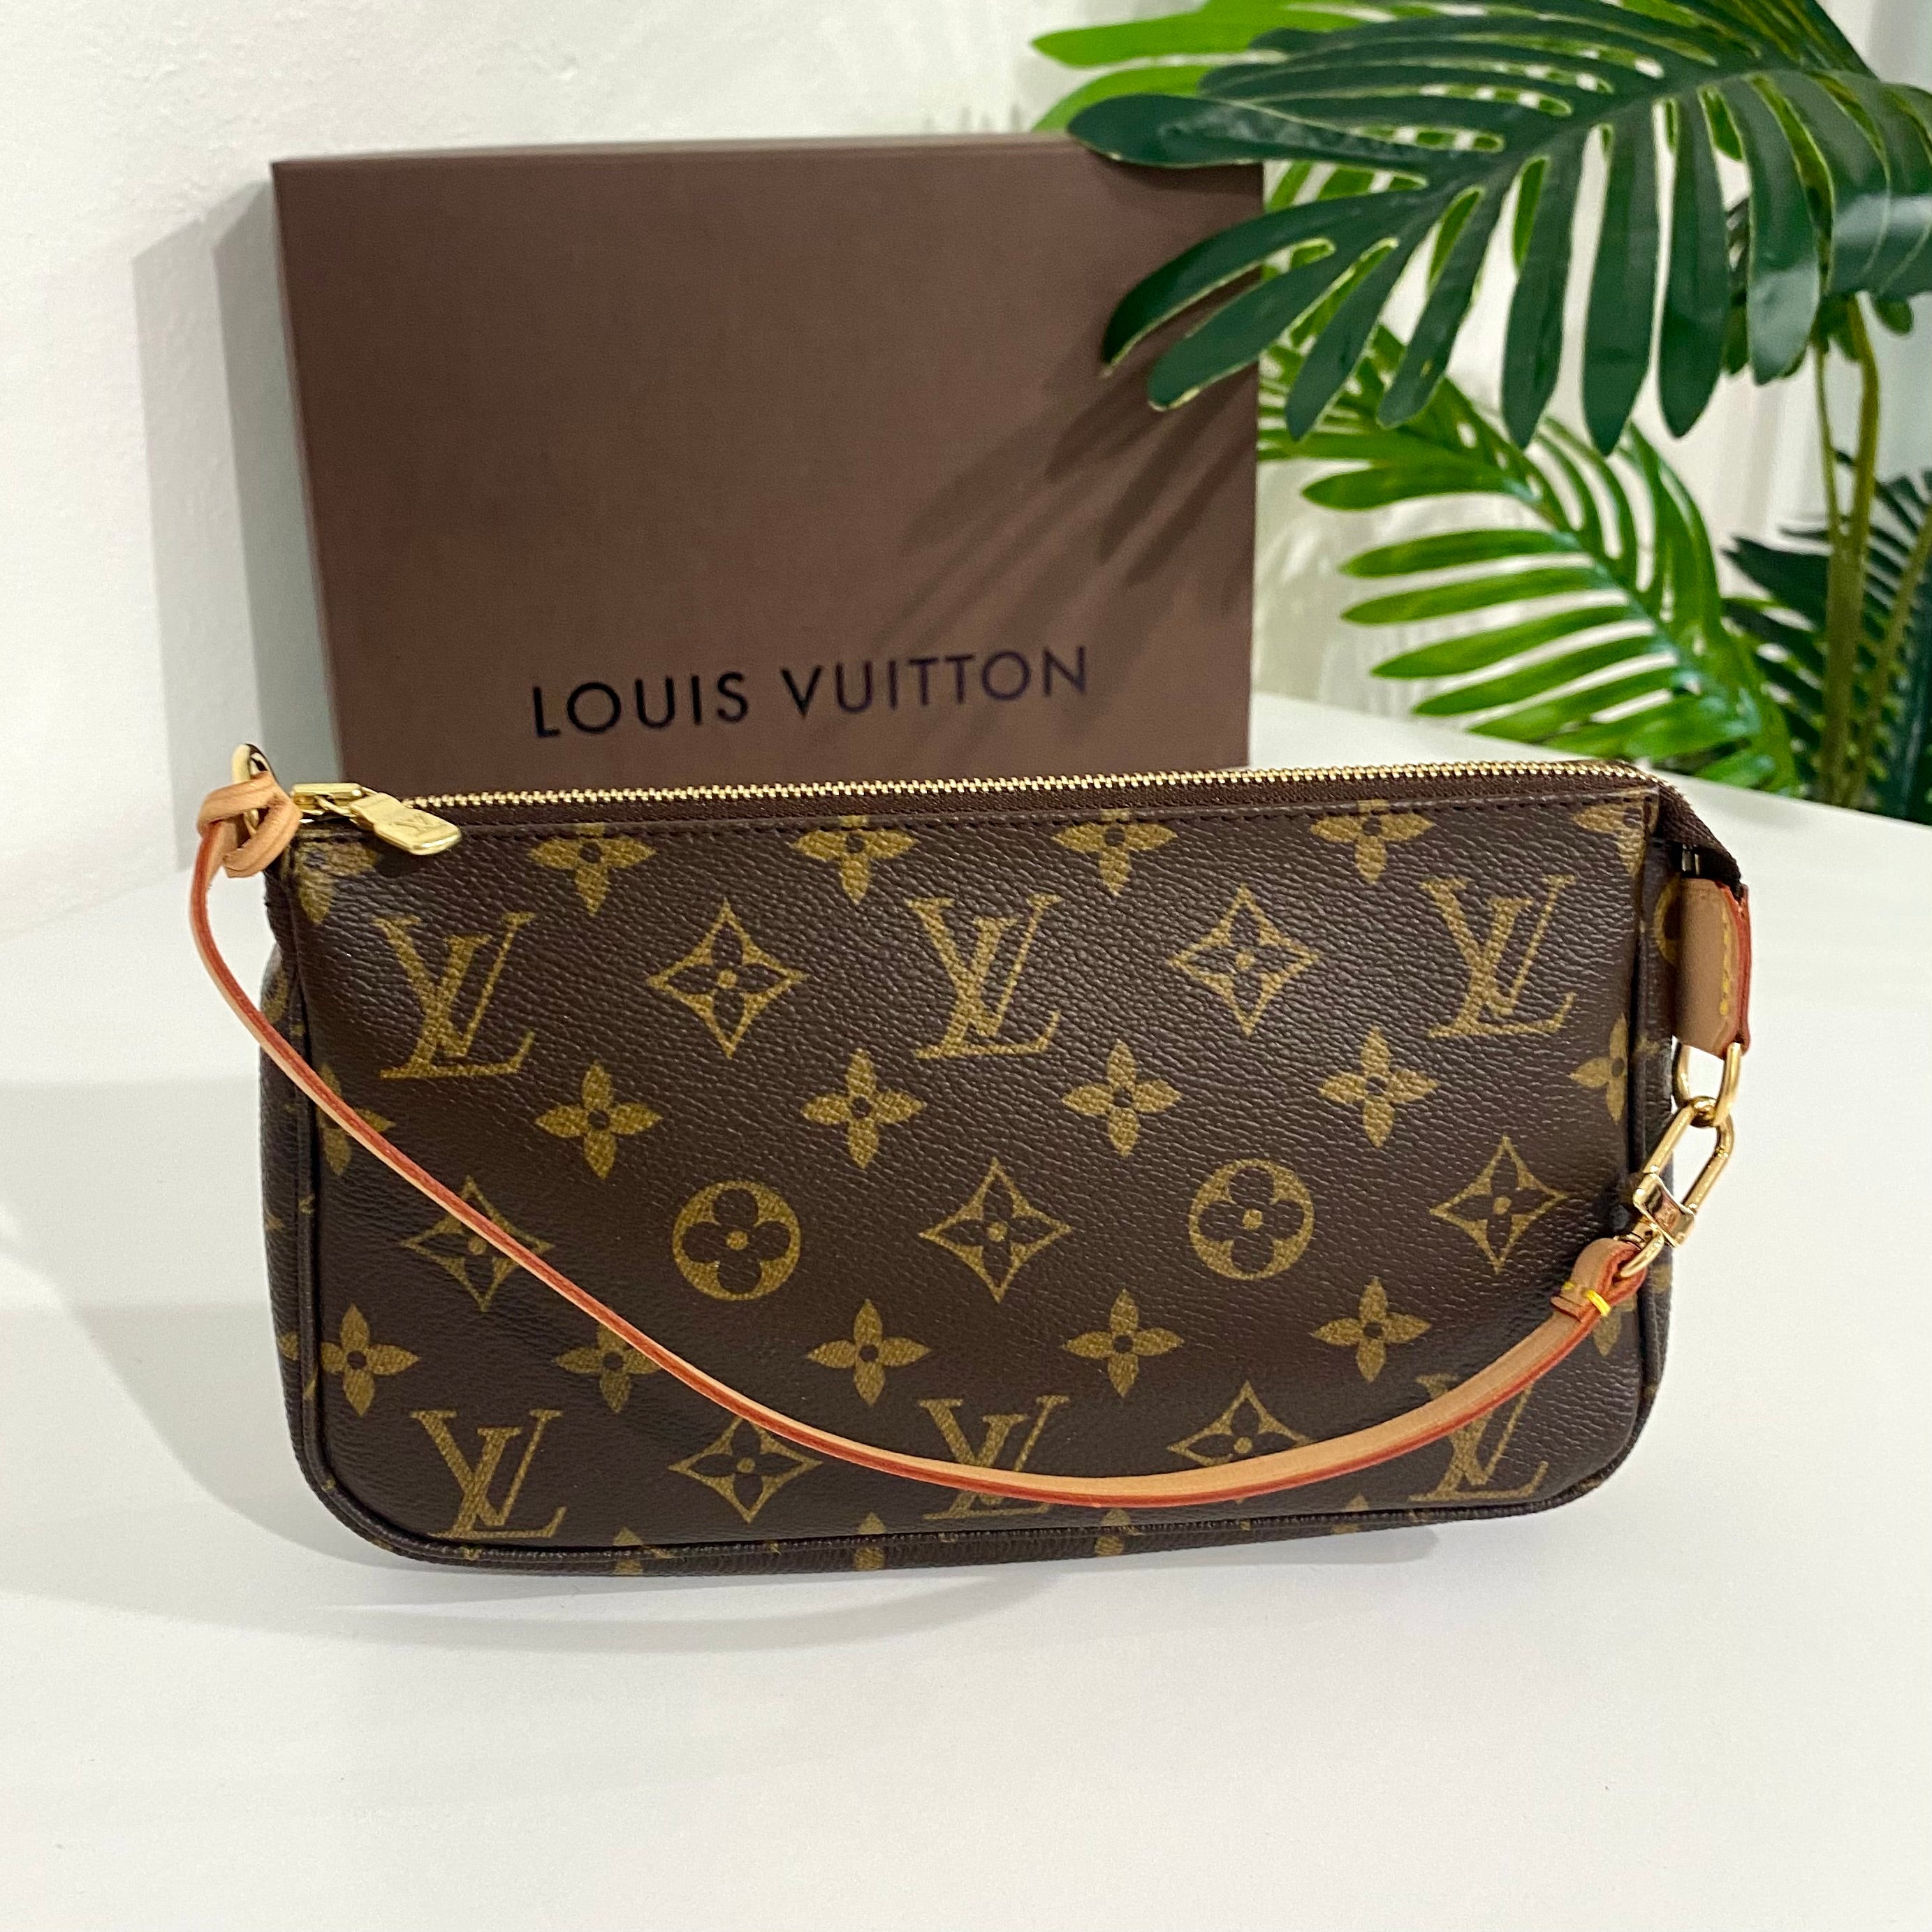 Unboxing Louis Vuitton Pochette Métis in Reverse Monogram 